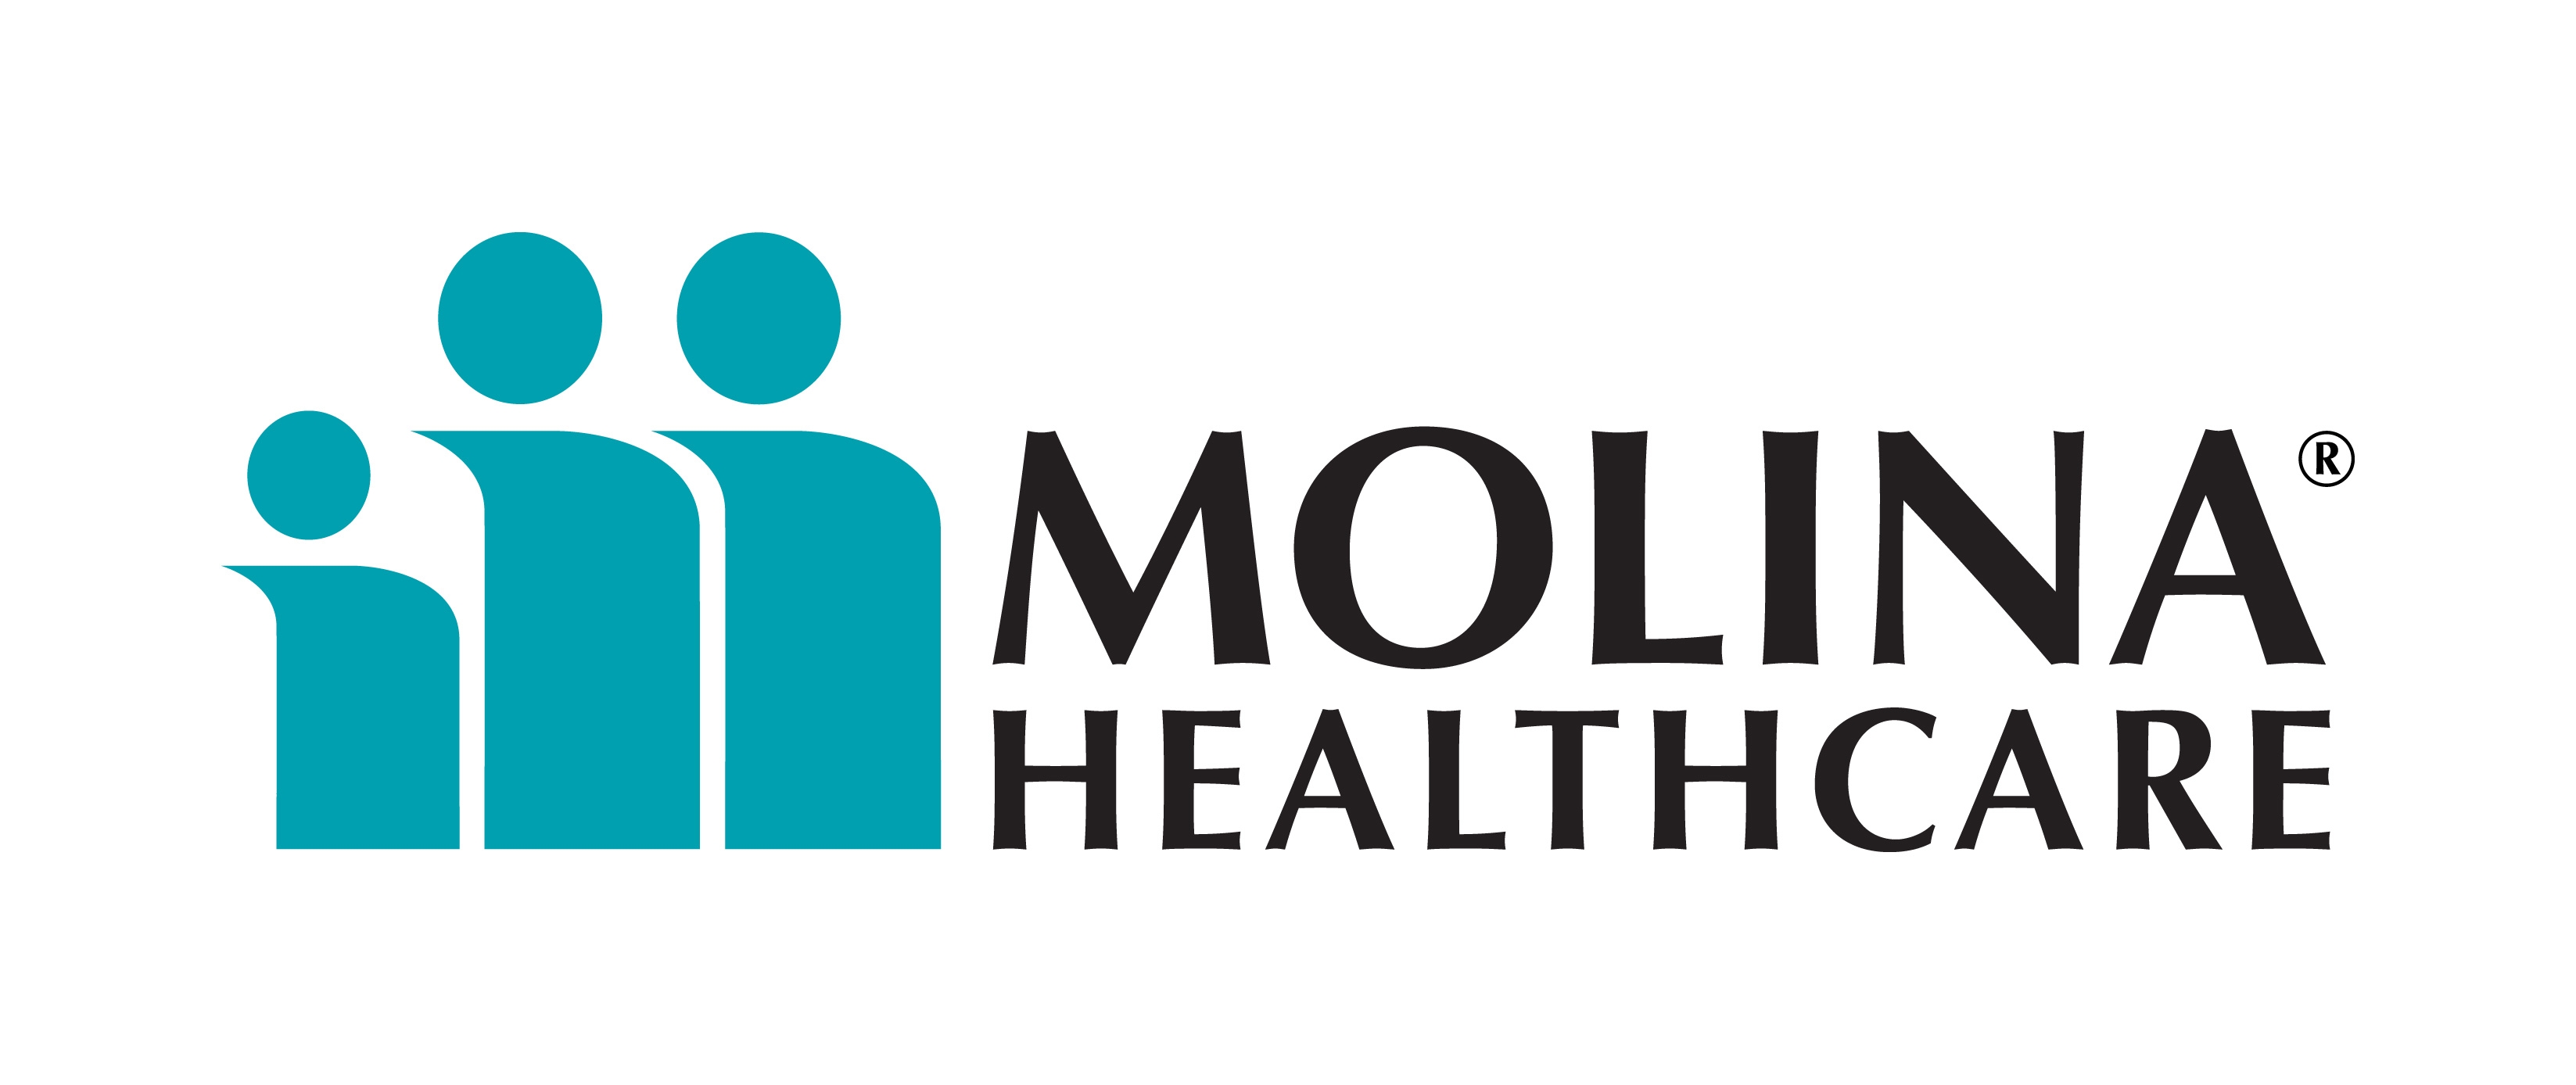 Molina Healthcare Logo photo - 1